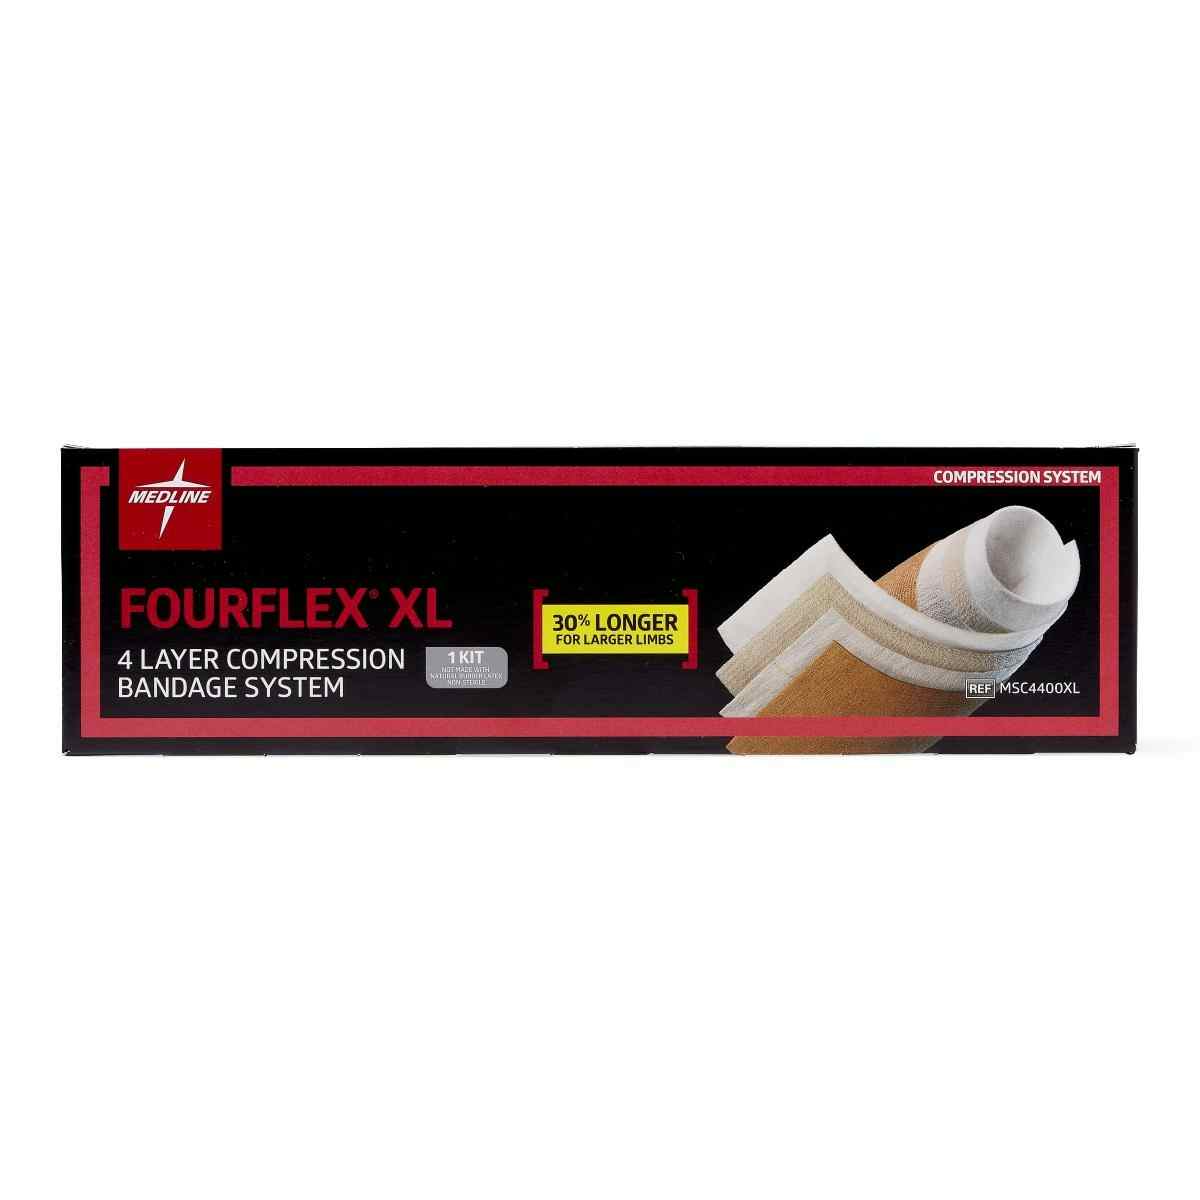 Medline Fourflex 4-Layer Compression Bandage System, MSC4400XLH, Long - 1 Kit